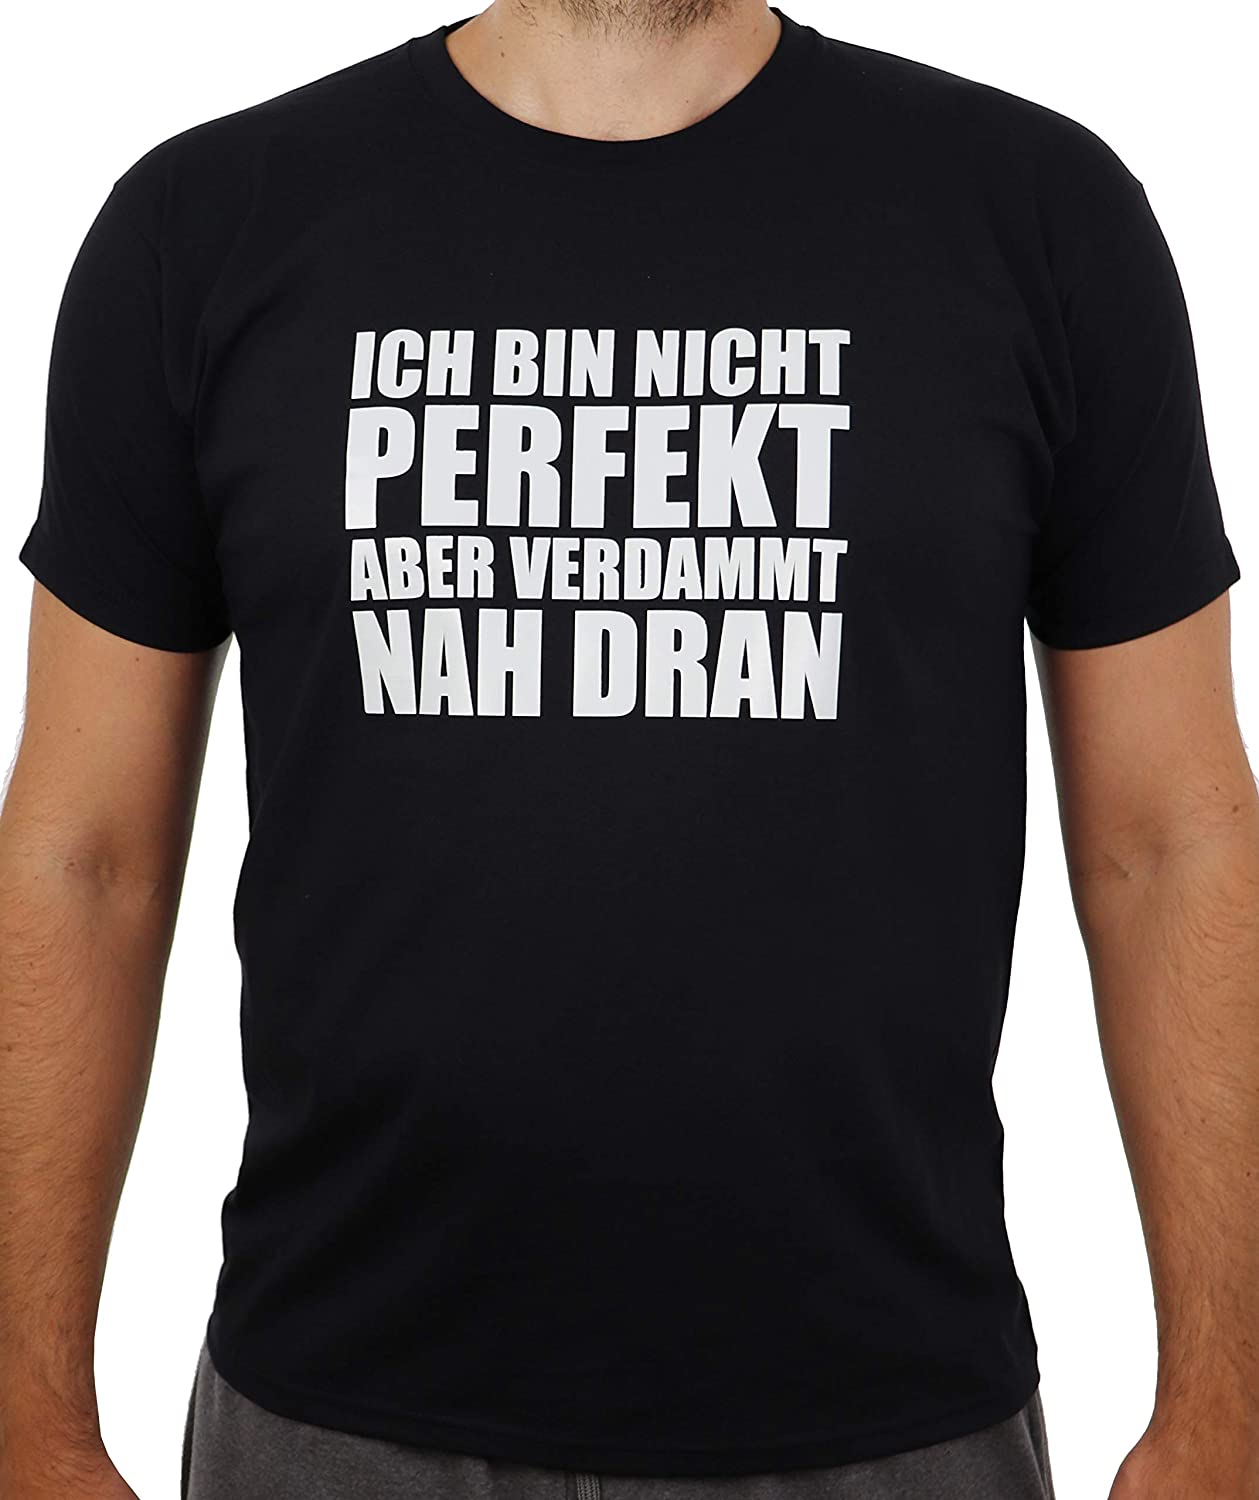 Schwarzes T-Shirt mit weissem Aufdruck Ich Bin Nicht perfekt Aber verdammt nah dran, Funshirt, Spass-T-Shirt (M)